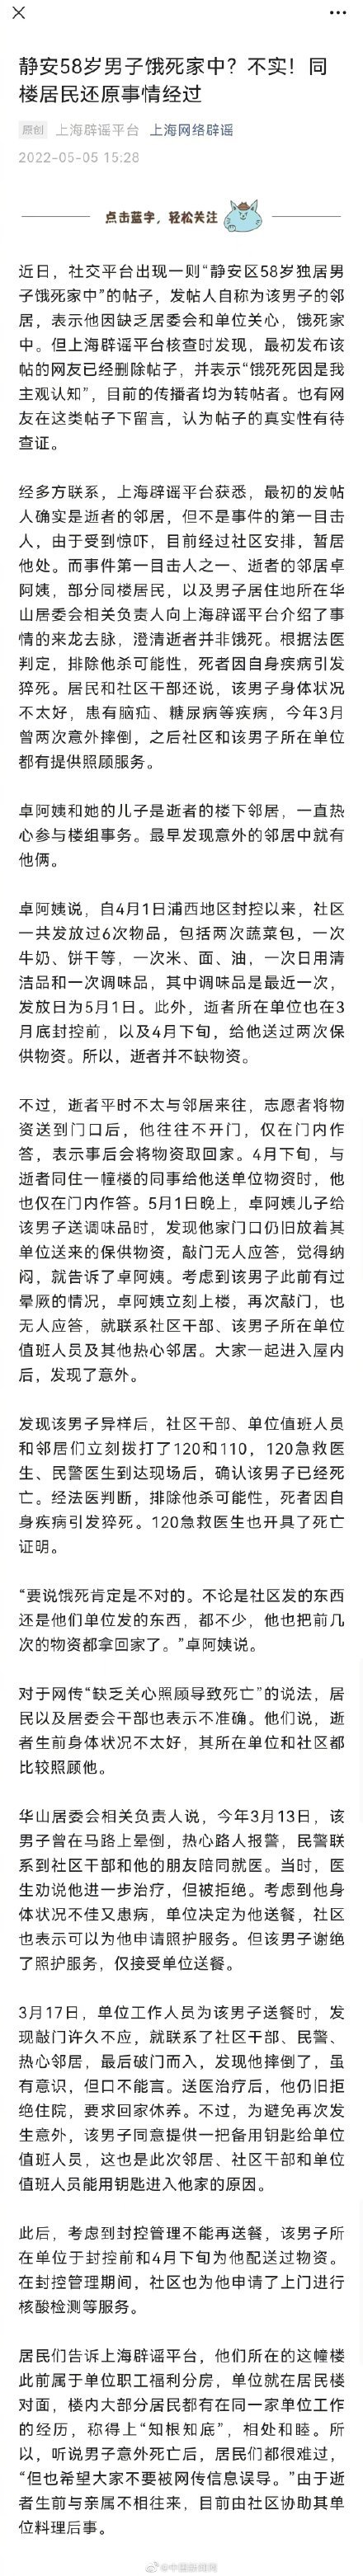 上海58岁独居男子饿死家中?不实!因自身疾病引发猝死